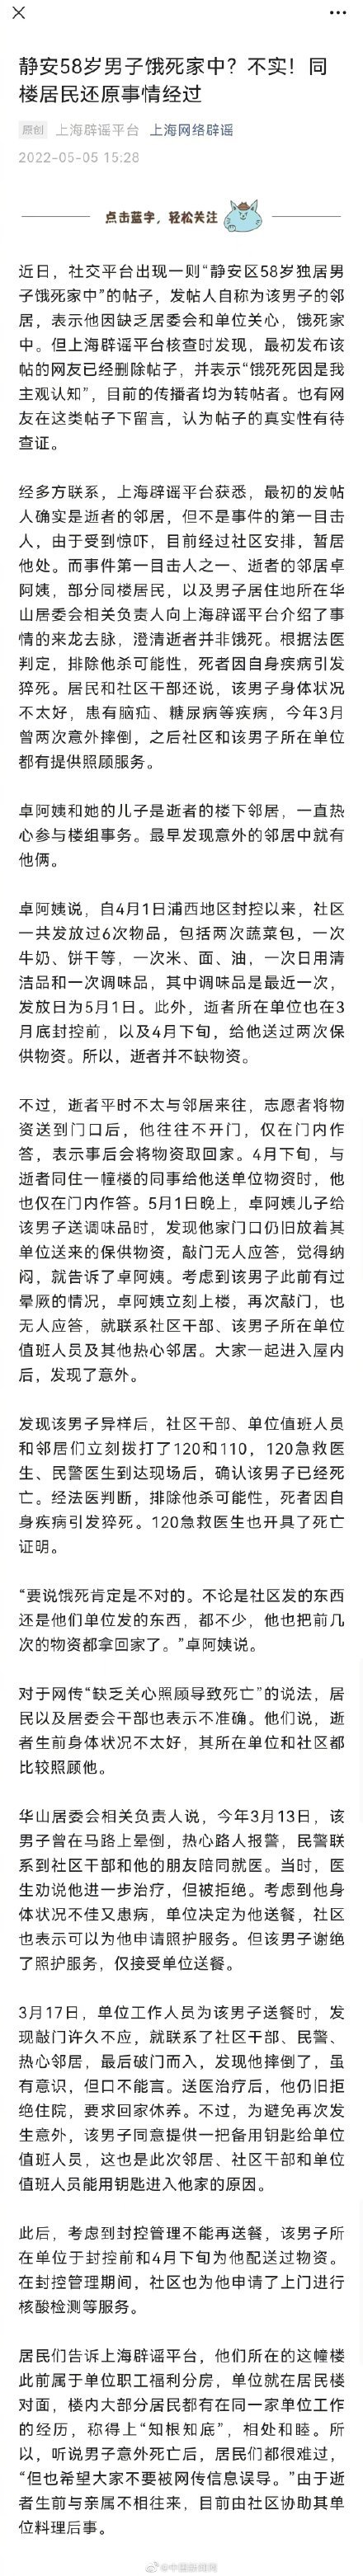 上海58岁独居男子饿死家中?不实!因自身疾病引发猝死